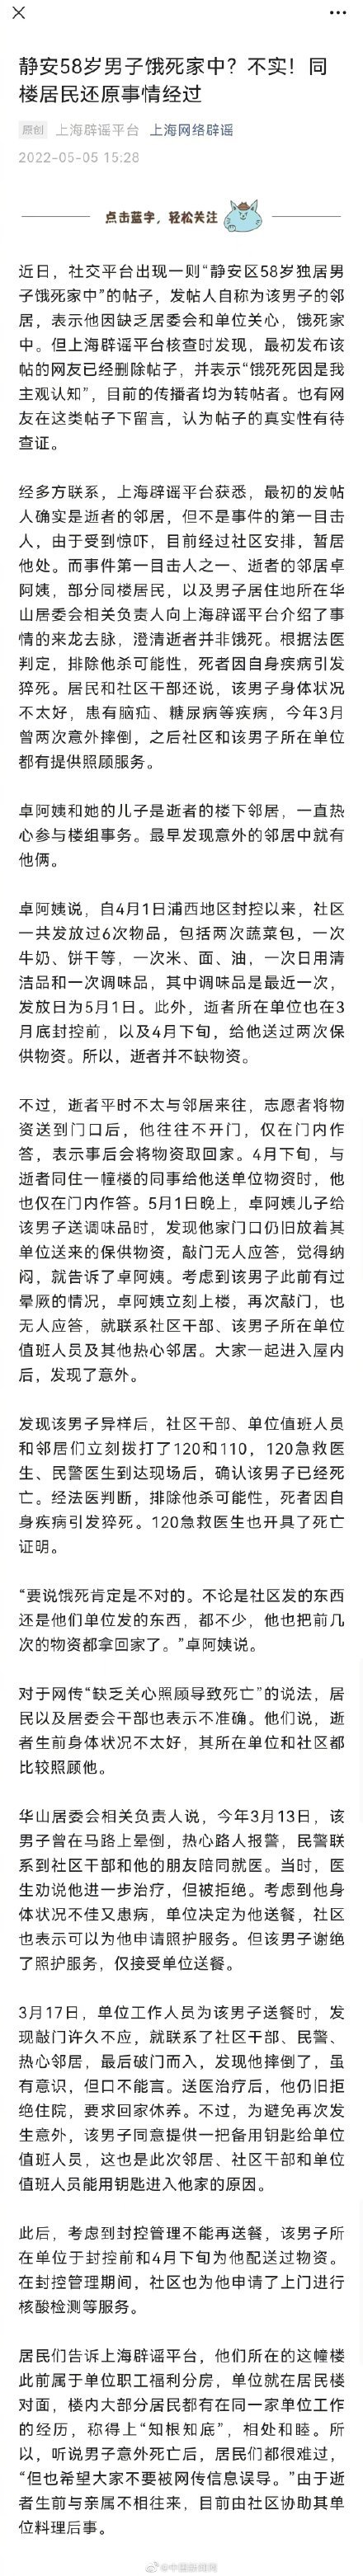 上海58岁独居男子饿死家中?不实!因自身疾病引发猝死